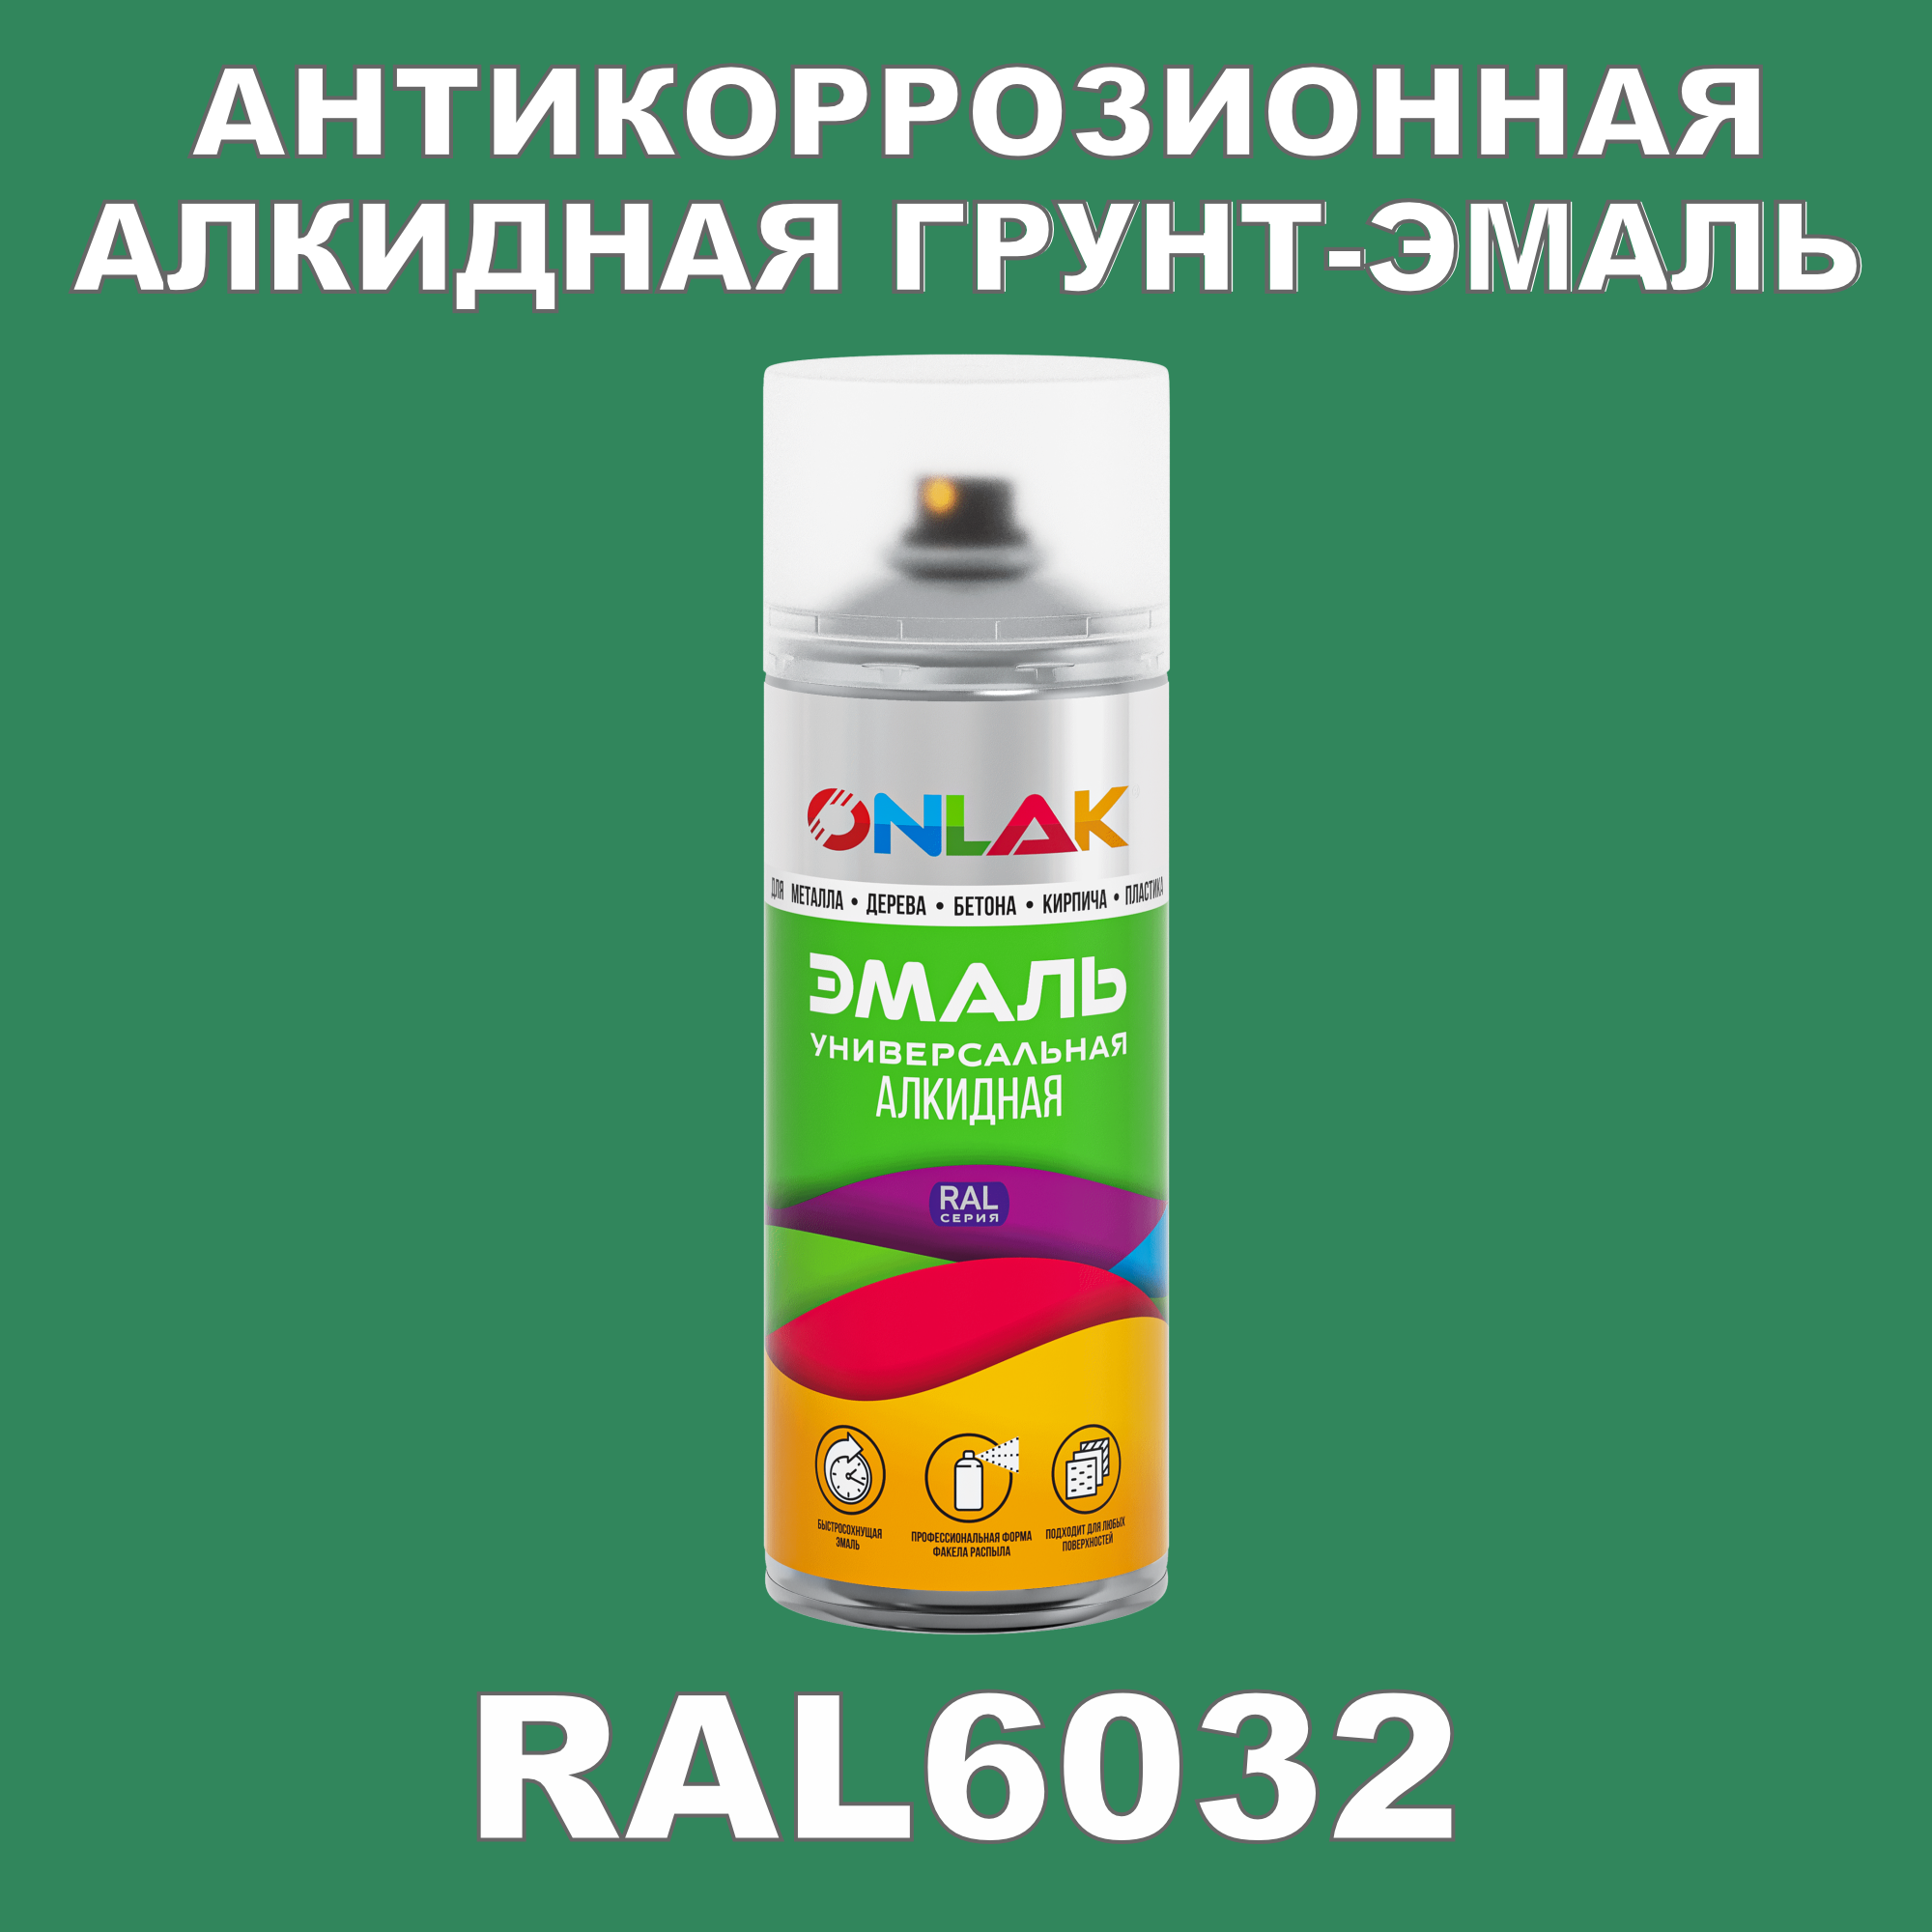 Антикоррозионная грунт-эмаль ONLAK RAL 6032,зеленый,717 мл